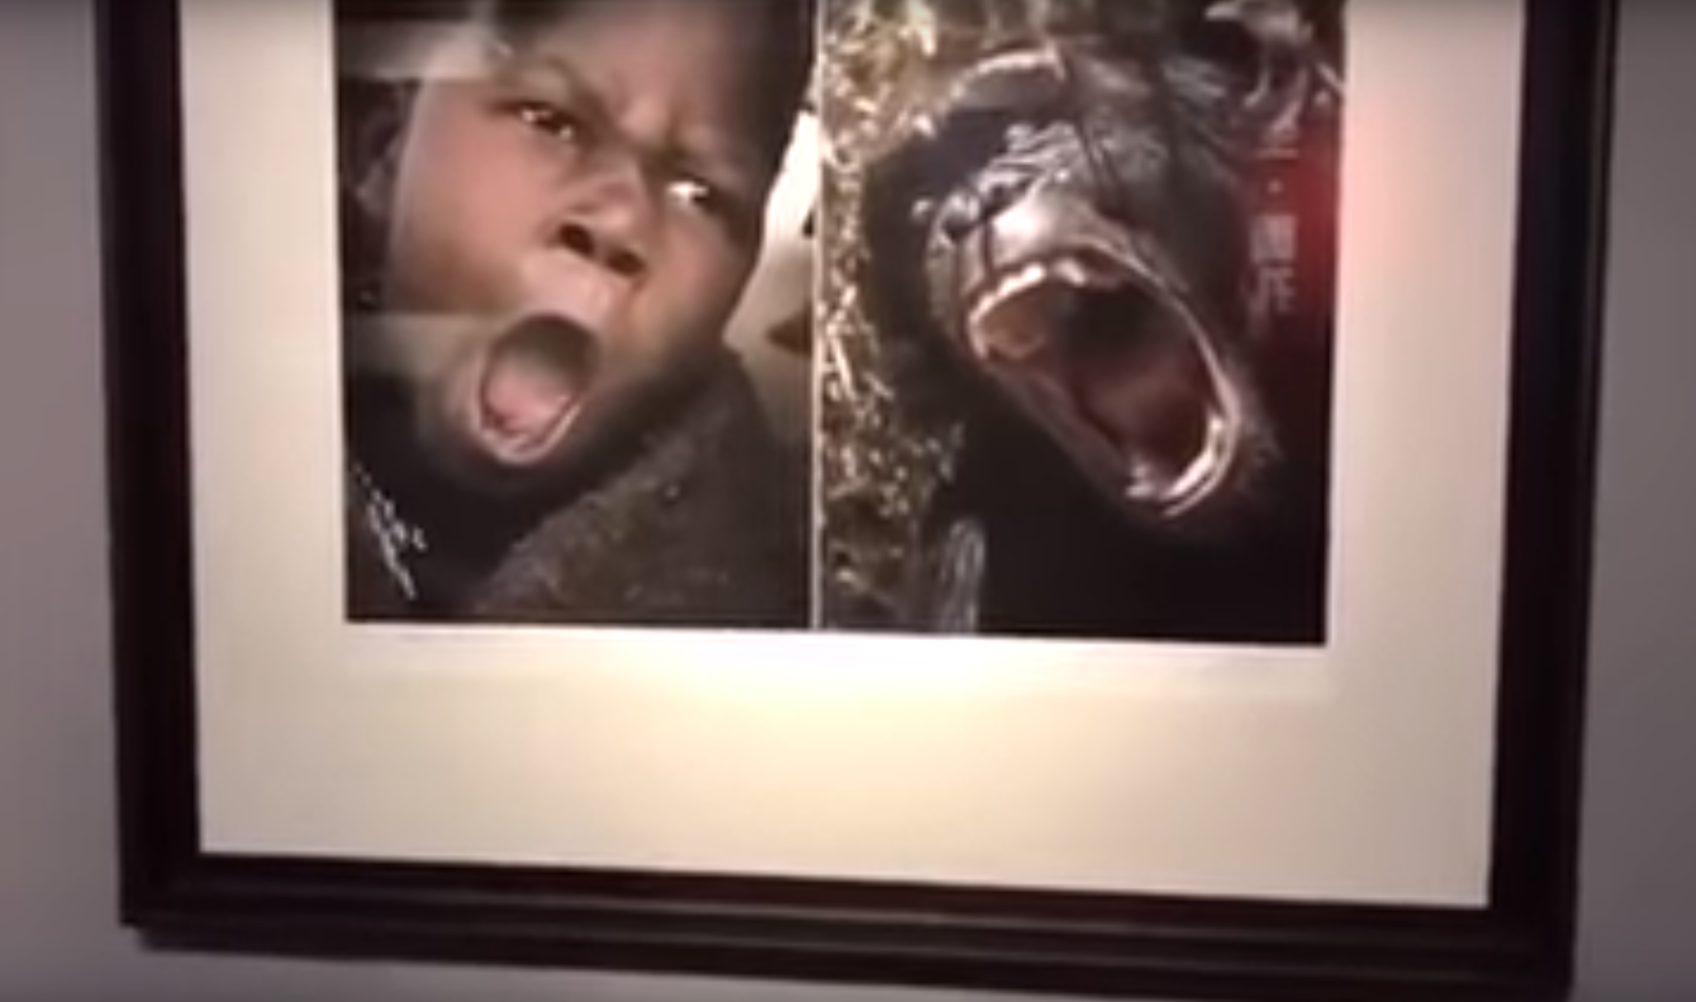 Óriási botrány lett a kínai kiállításból, ami szerint az afrikaiak olyanok, mint az állatok